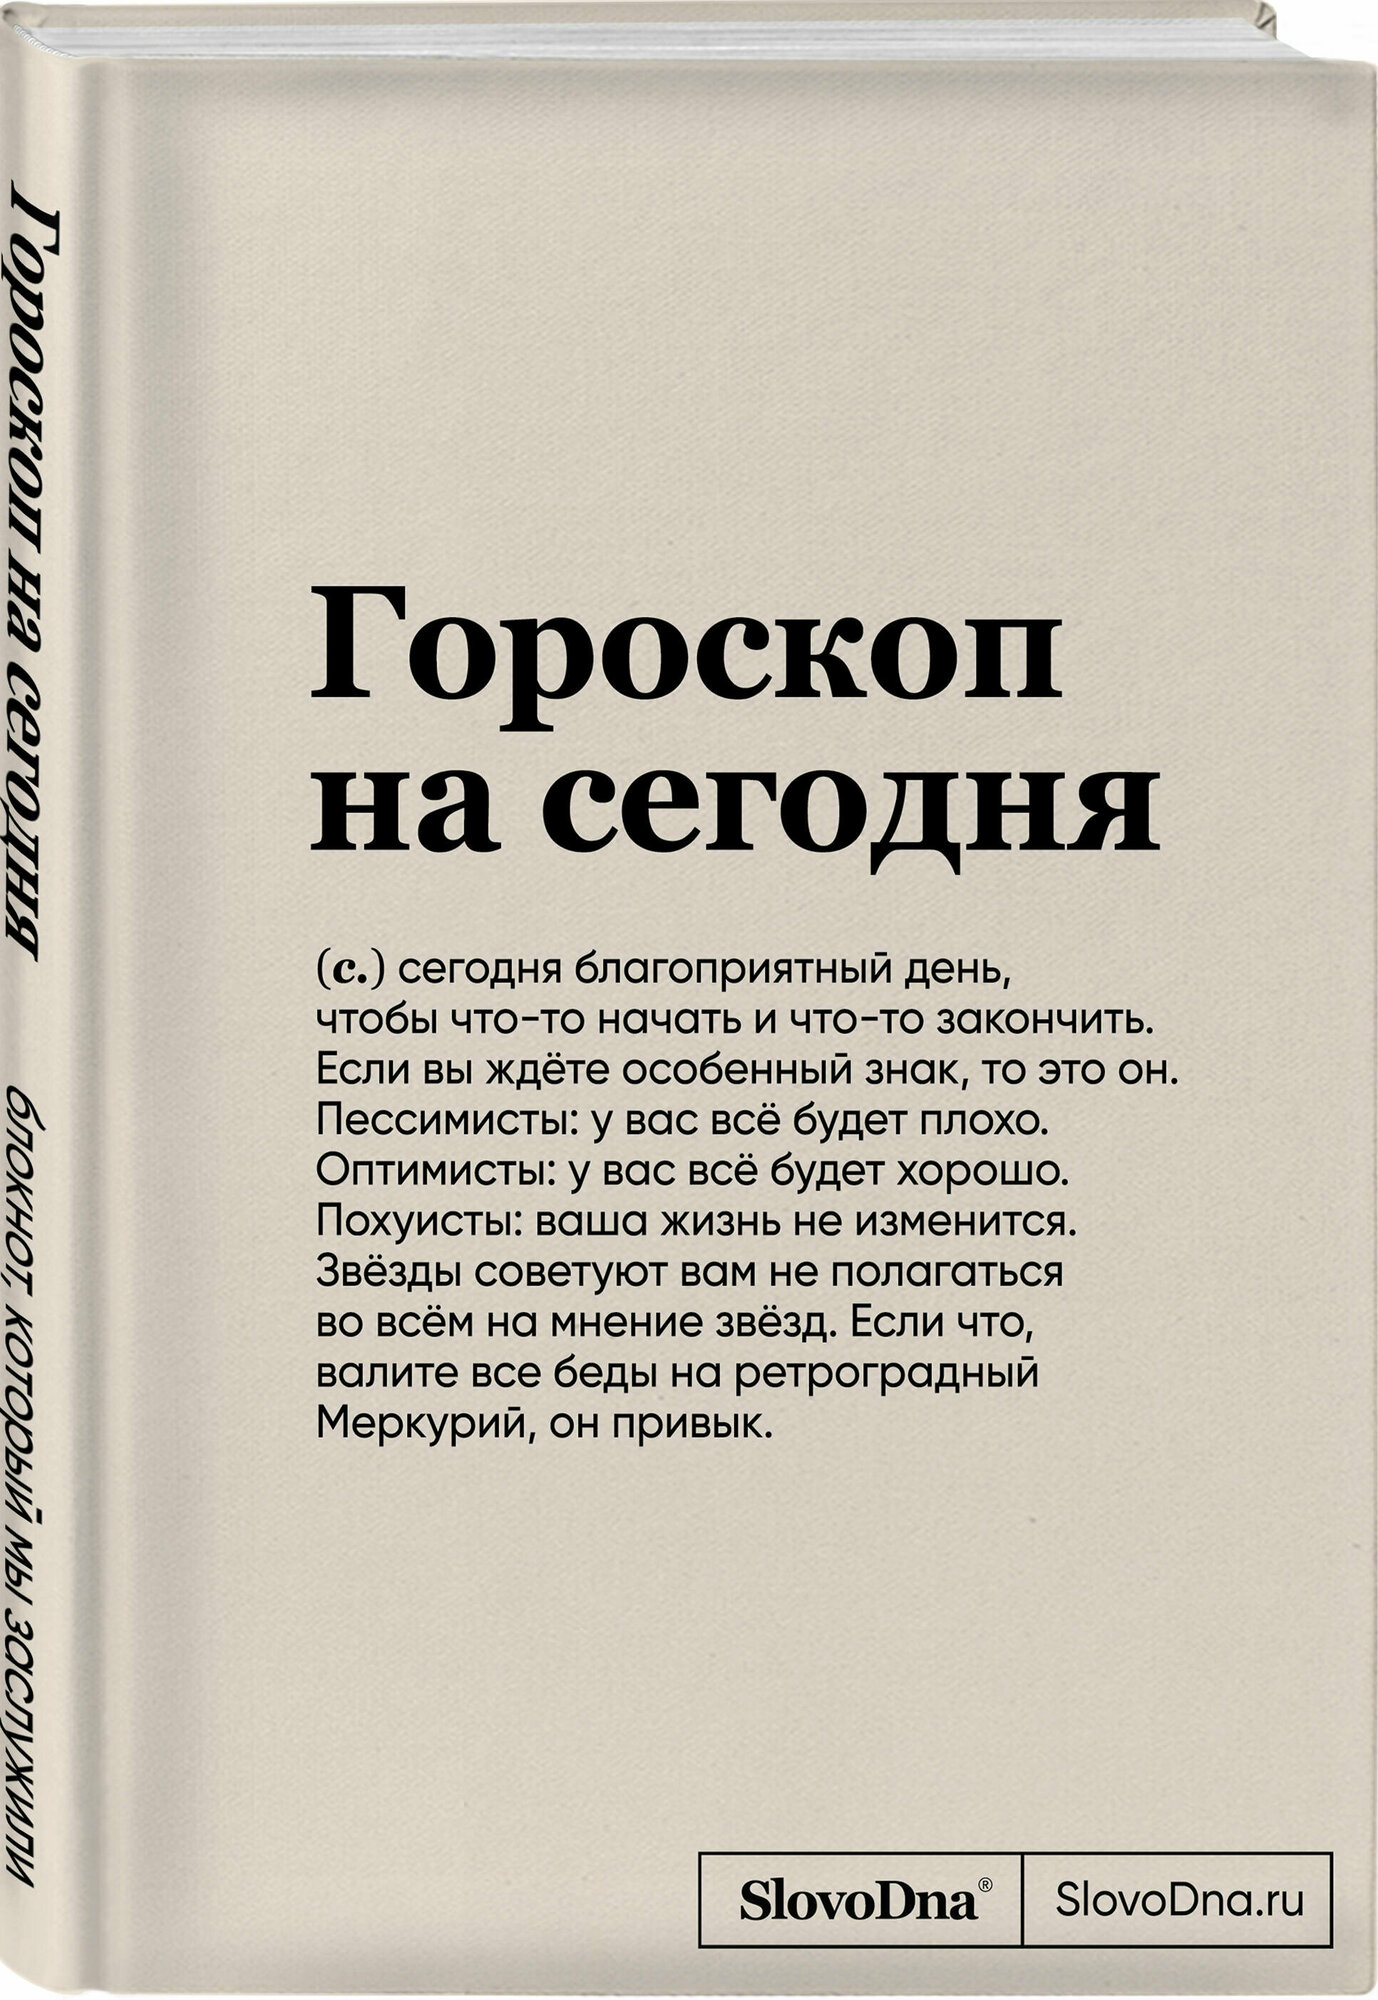 Караваев К. Блокнот SlovoDna. Гороскоп на сегодня (формат А5, 128 стр, с контентом)